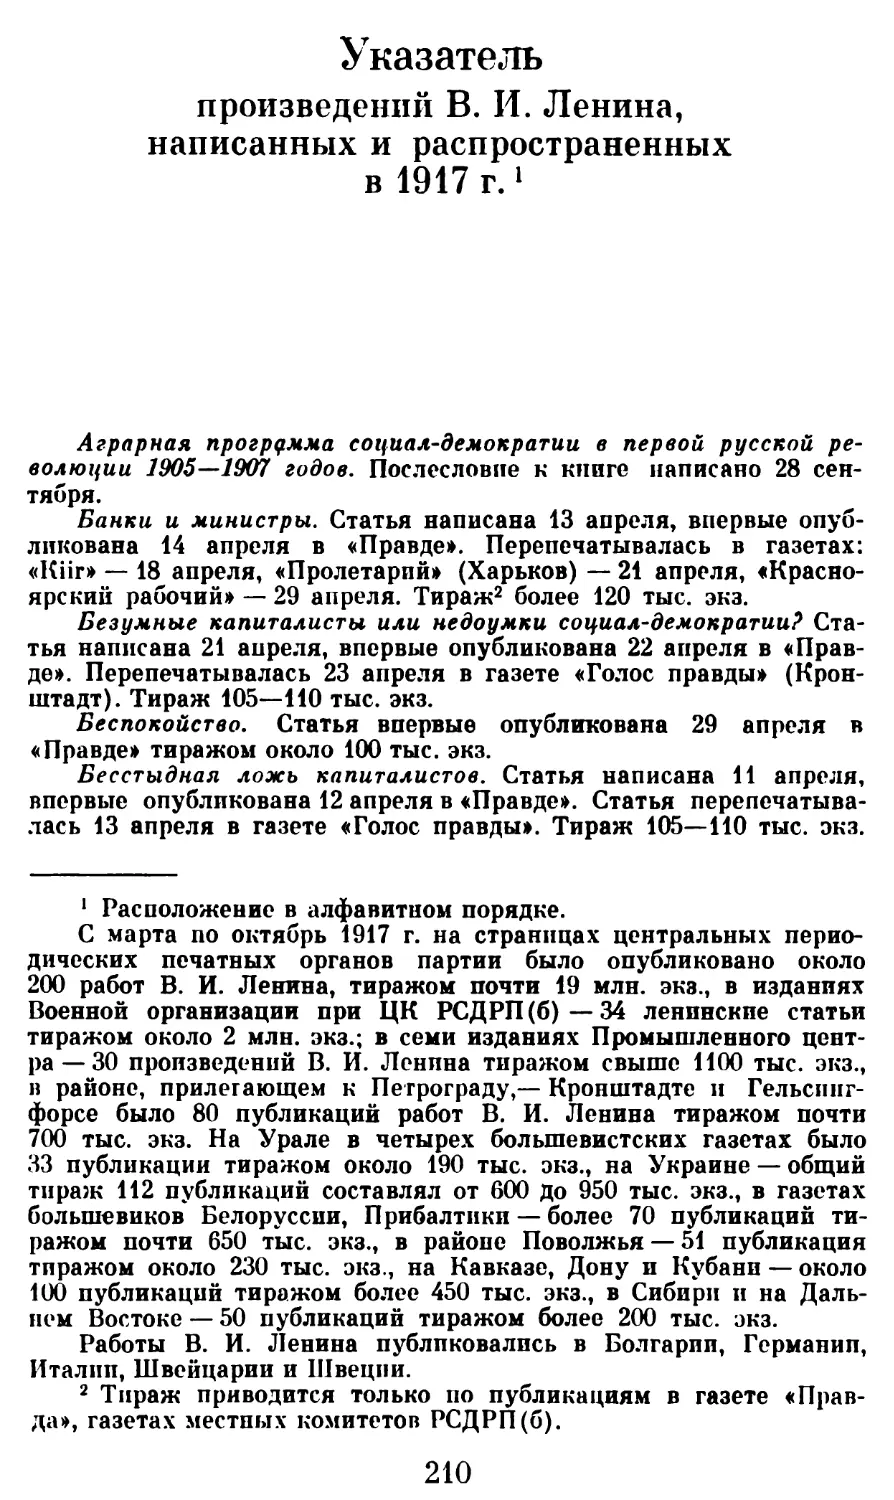 Указатель произведений В. И. Ленина, написанных и распространенных в 1917 г